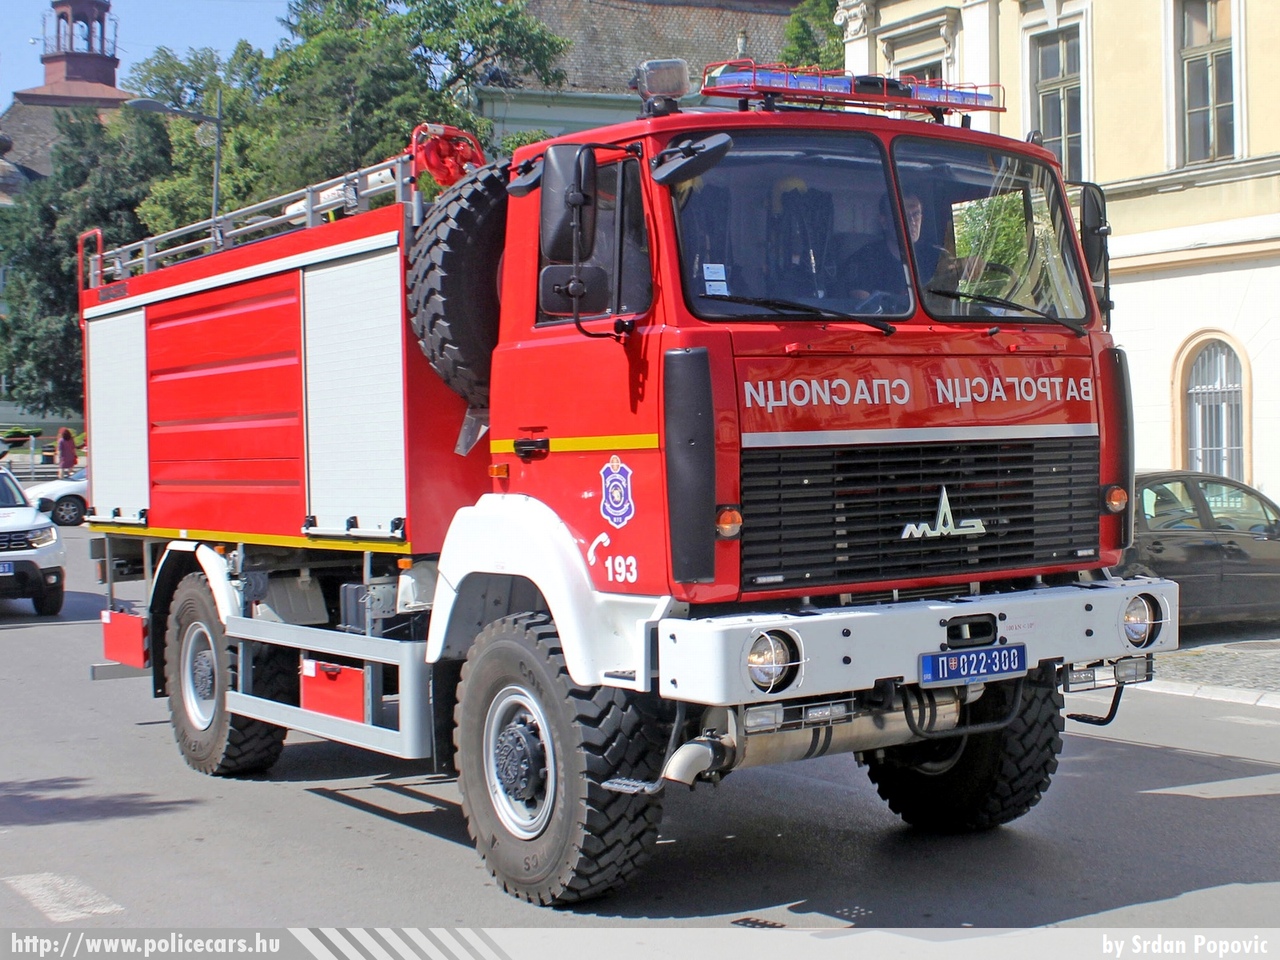 MAZ 5316, Zrenjanin, fotó: Srdan Popovic
Keywords: szerb Szerbia tûzoltóság tûzoltó tûzoltóautó Serbia serbian fire firetruck